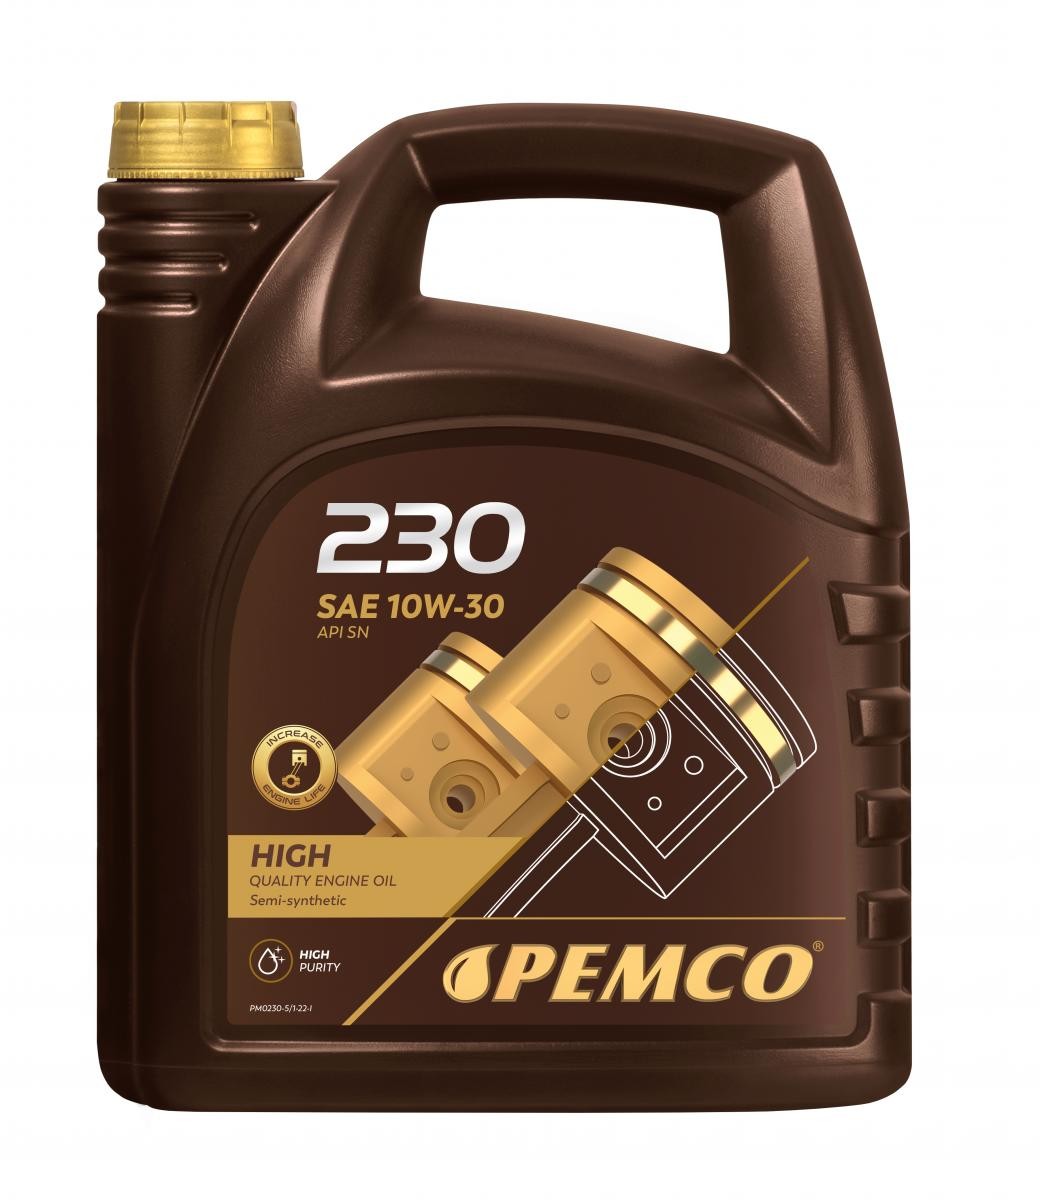 PEMCO iDRIVE 200, iDRIVE 230 PM0230-5 Motoröl 10W-30, 5l, Teilsynthetiköl